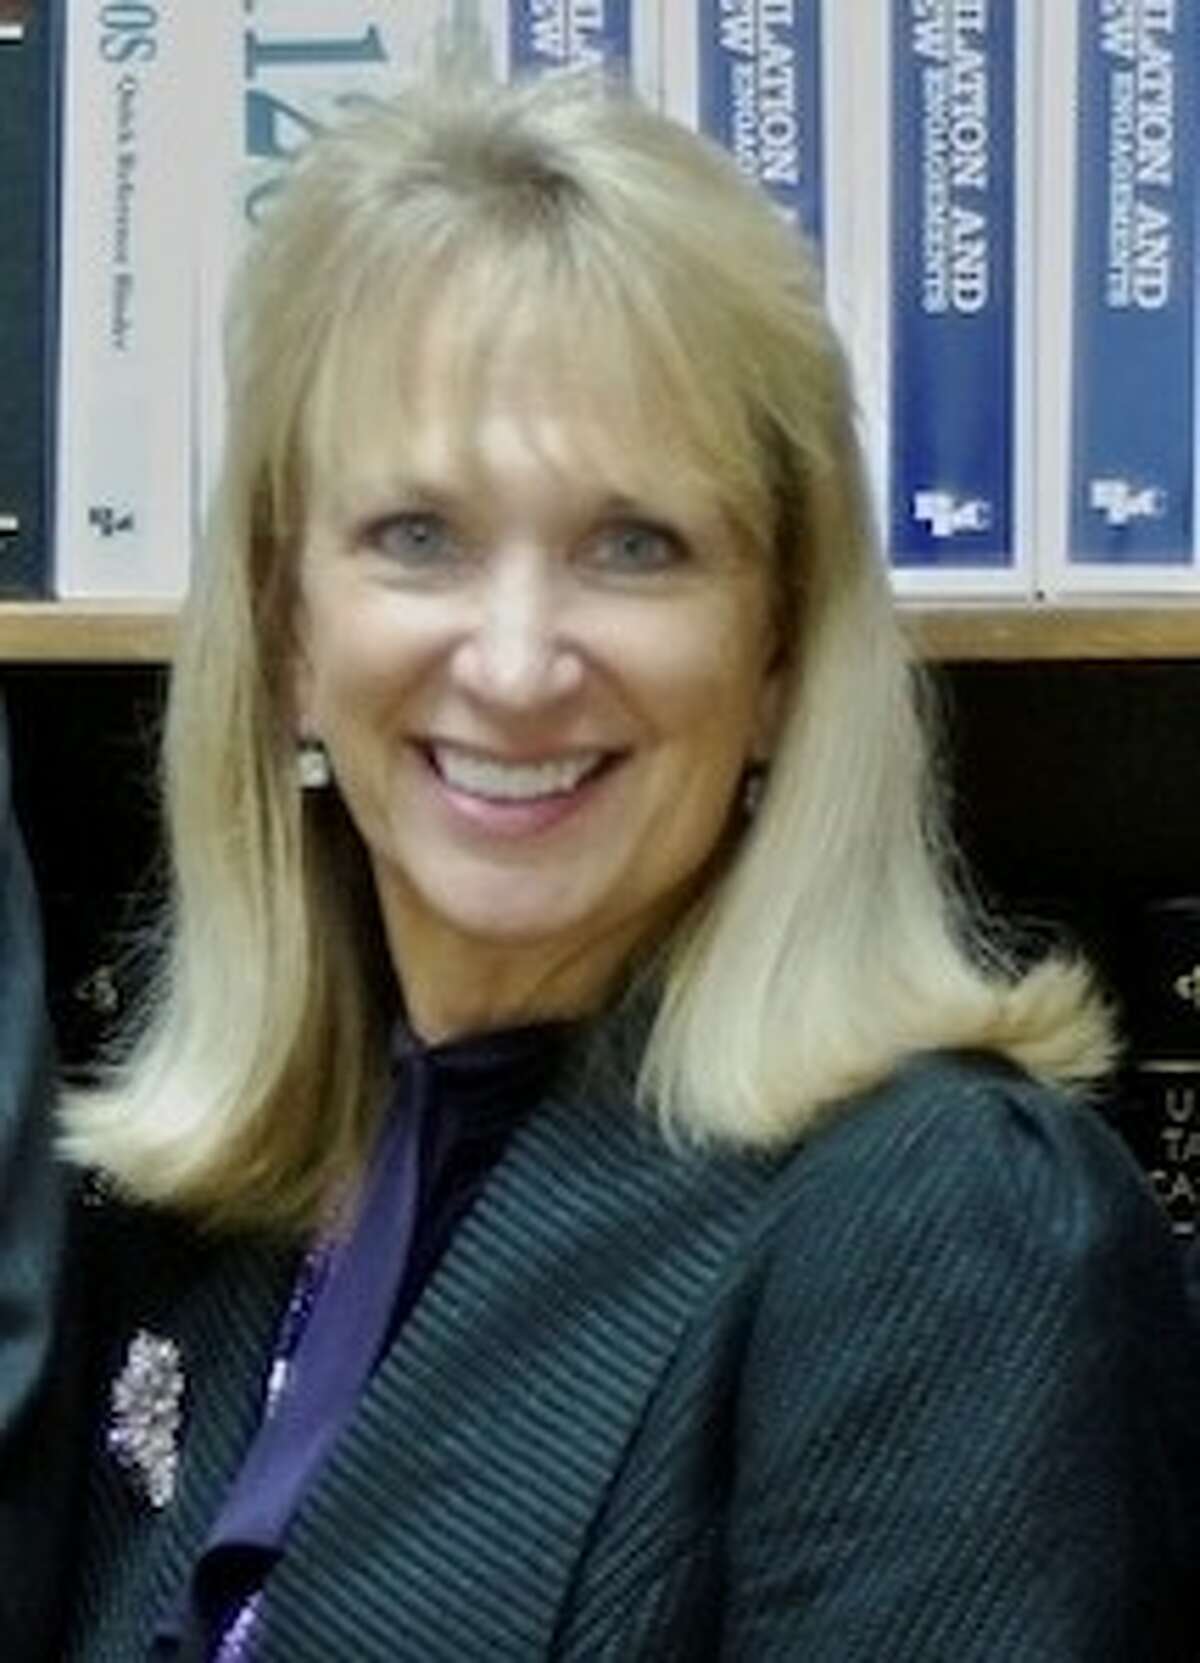 Jessica Johnson was named the Dayton ISD superintendent in September.